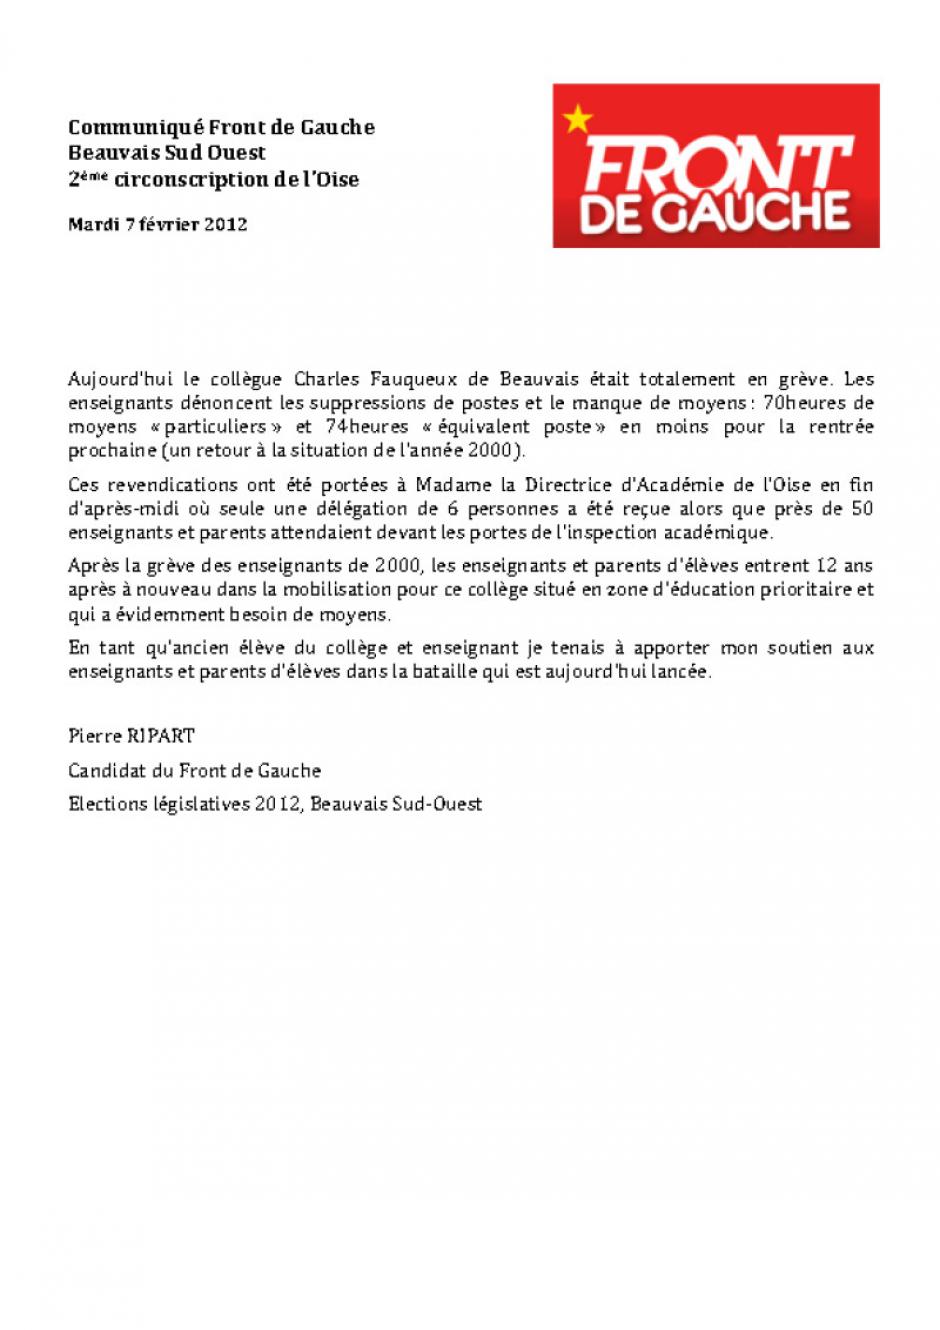 Communiqué de presse de Pierre Ripart concernant la suppression de postes au collège Fauqueux - Beauvais, 7 février 2012